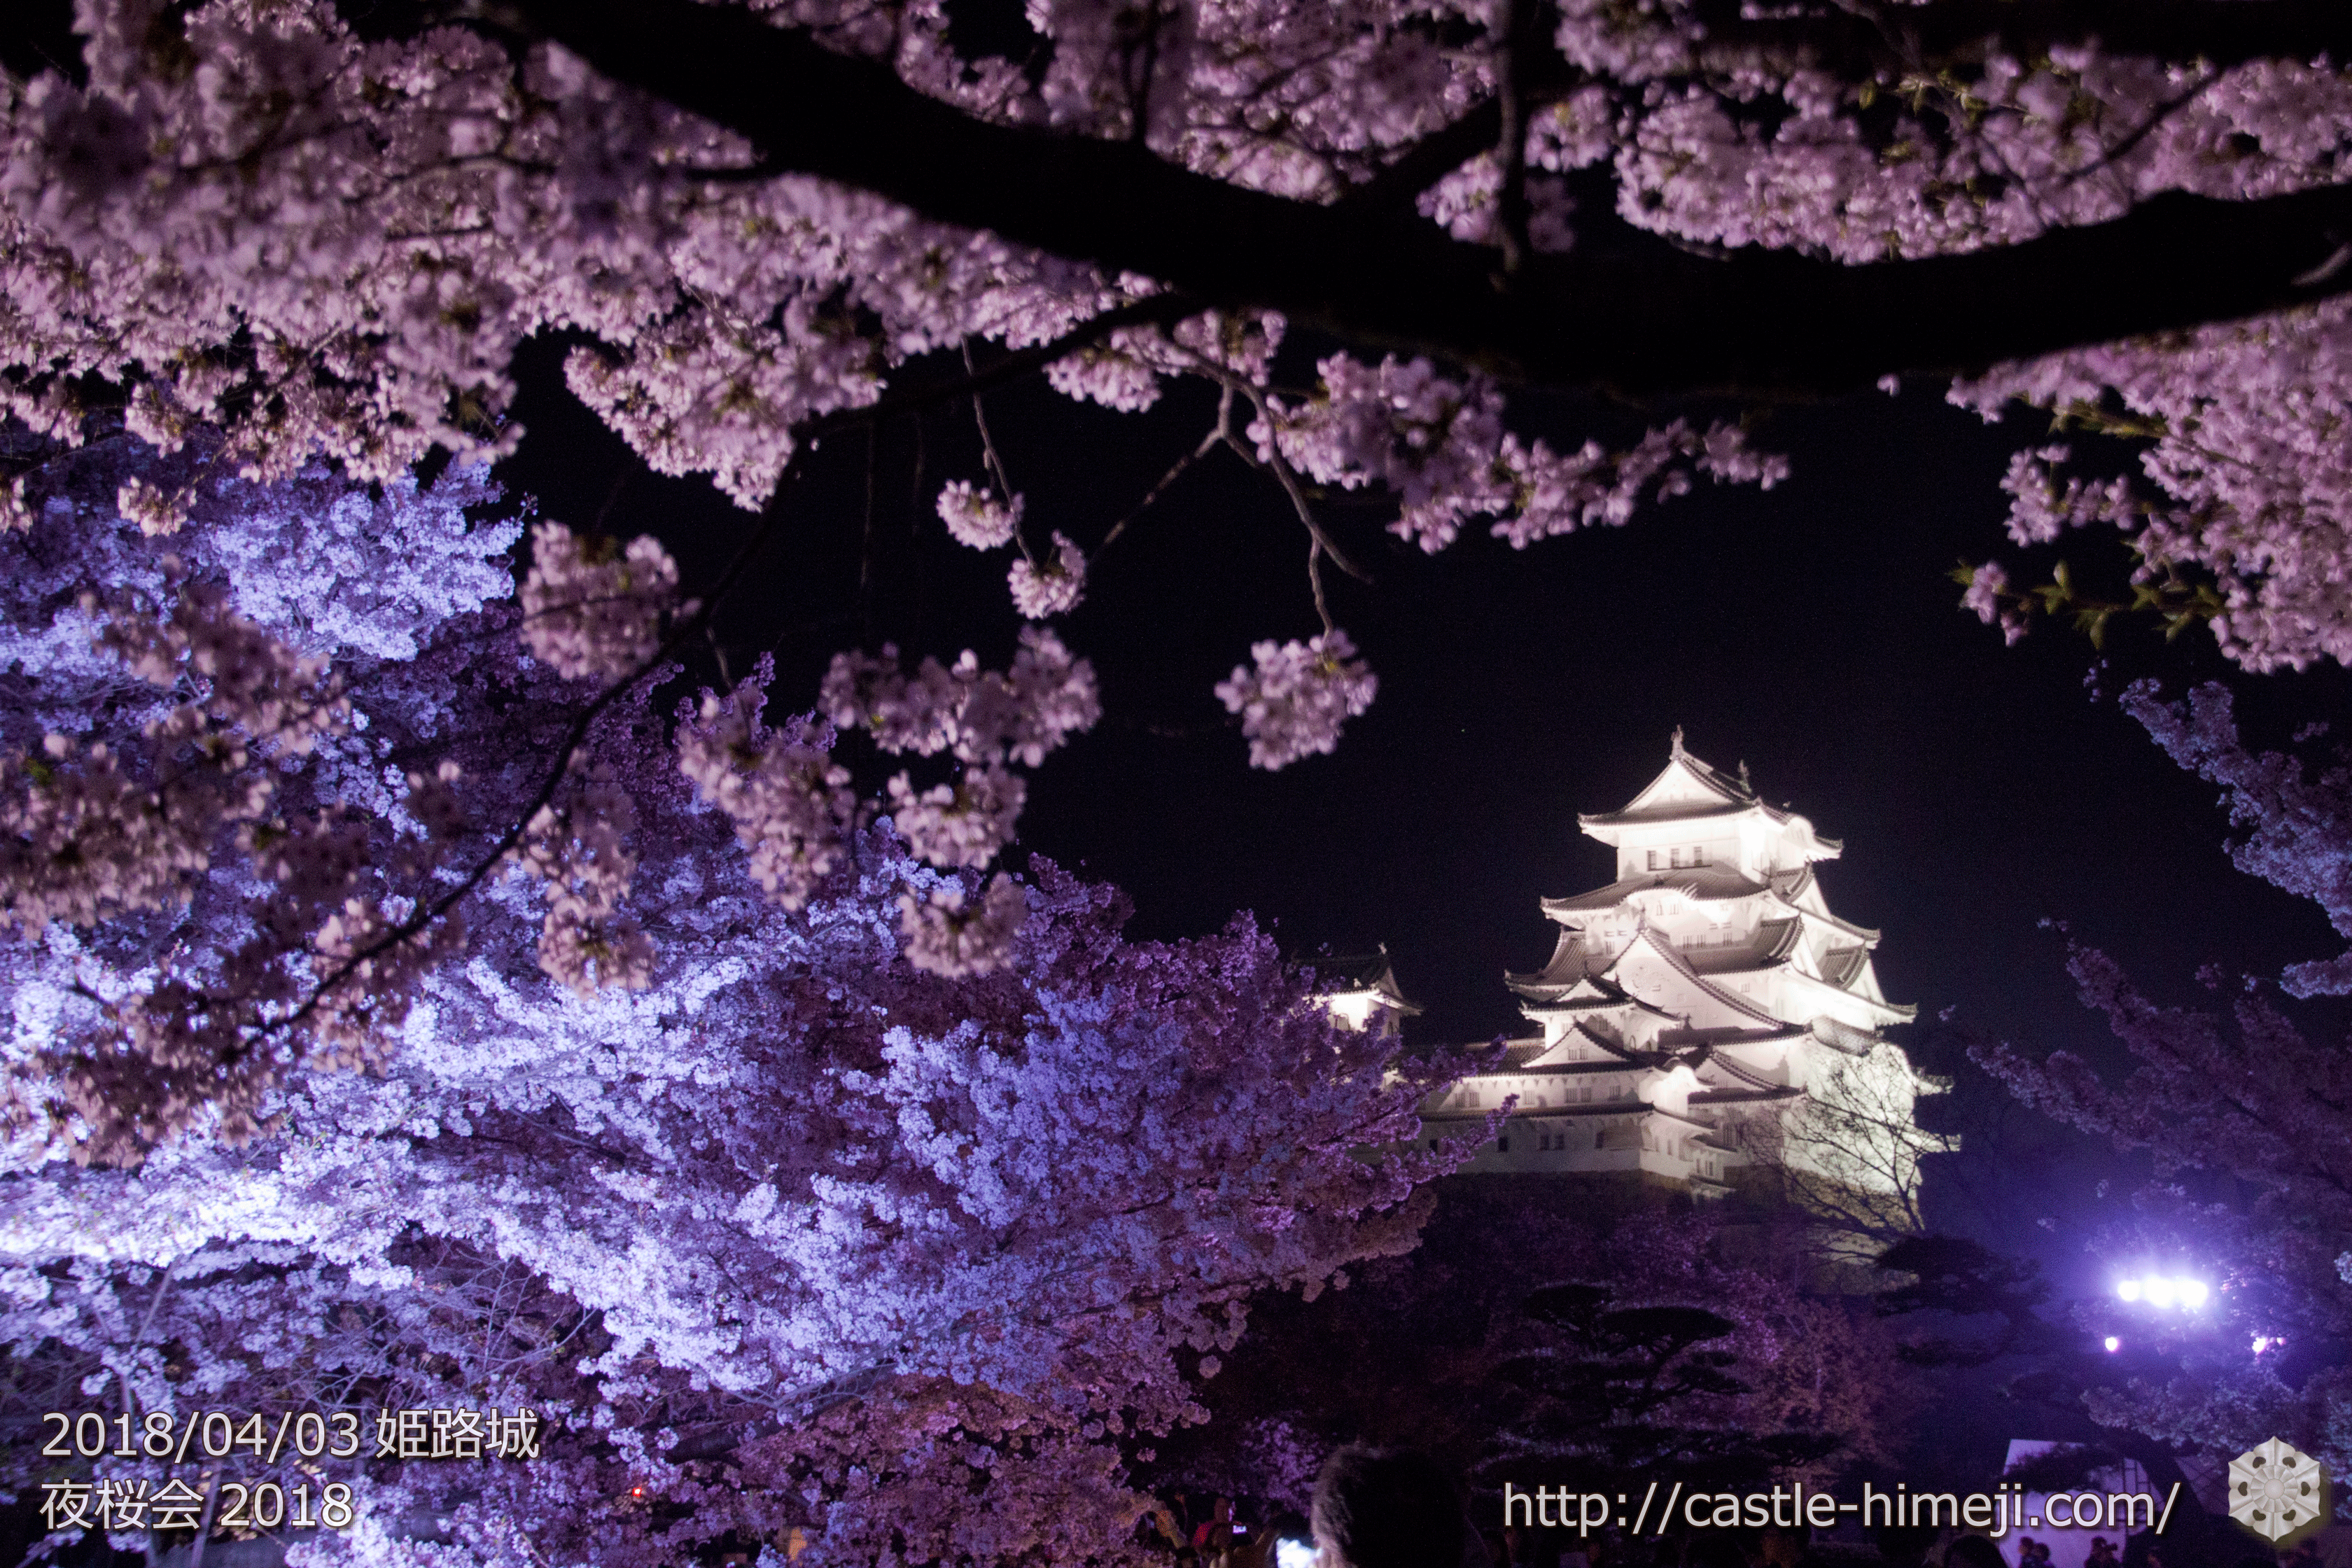 19 4 3 4 7 姫路城 夜桜会 の満開は後半 開催概要 終了 姫路城観光おすすめ 見どころ案内